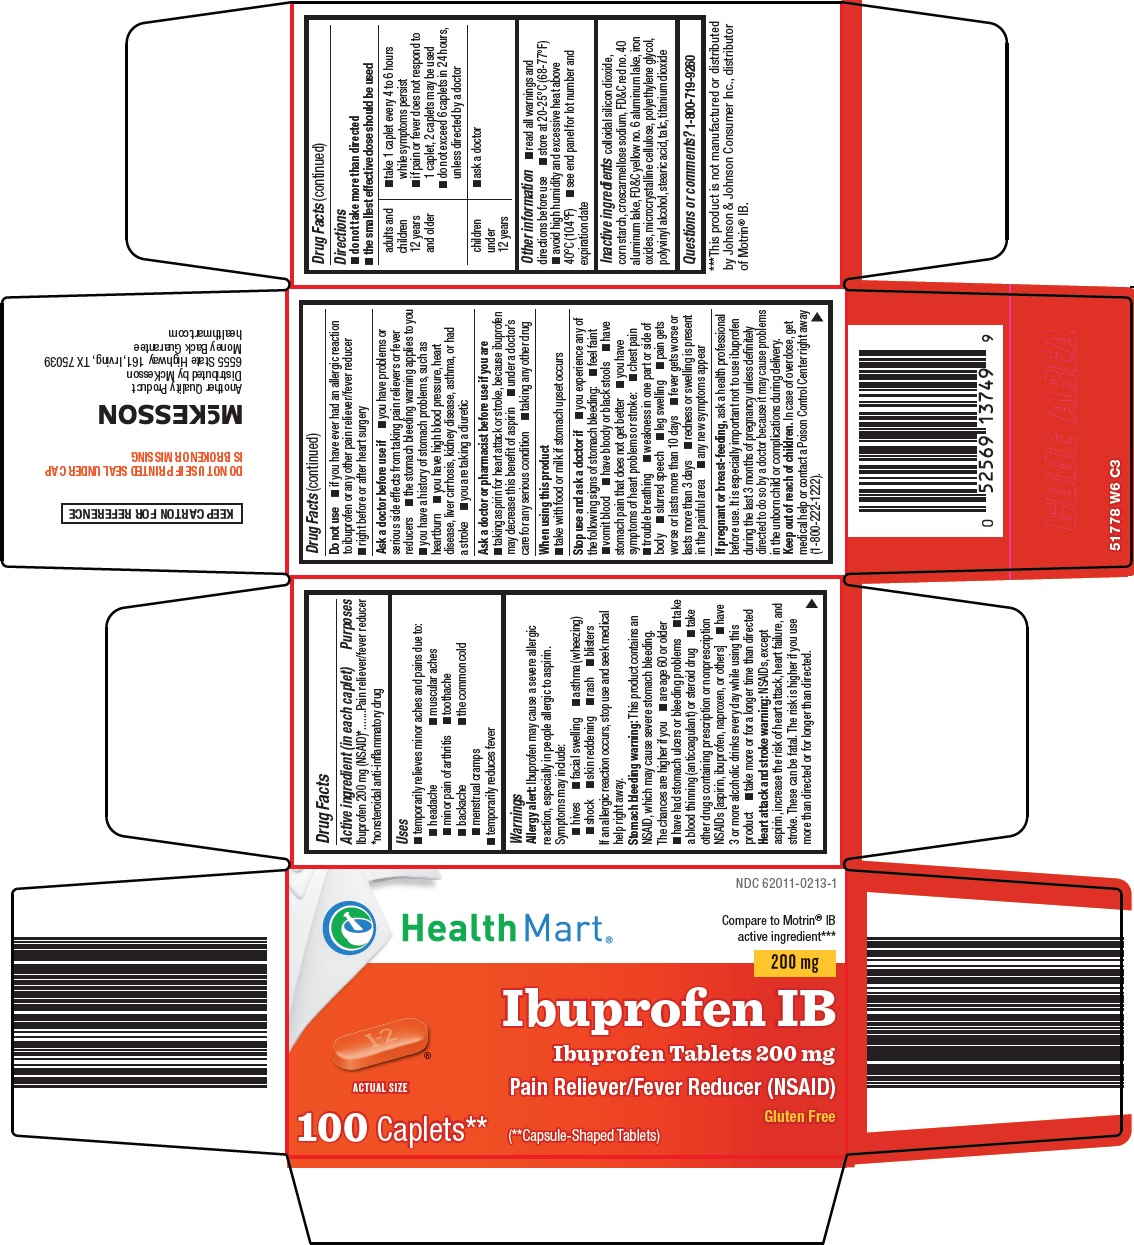 517-w6-ibuprofen-ib.jpg